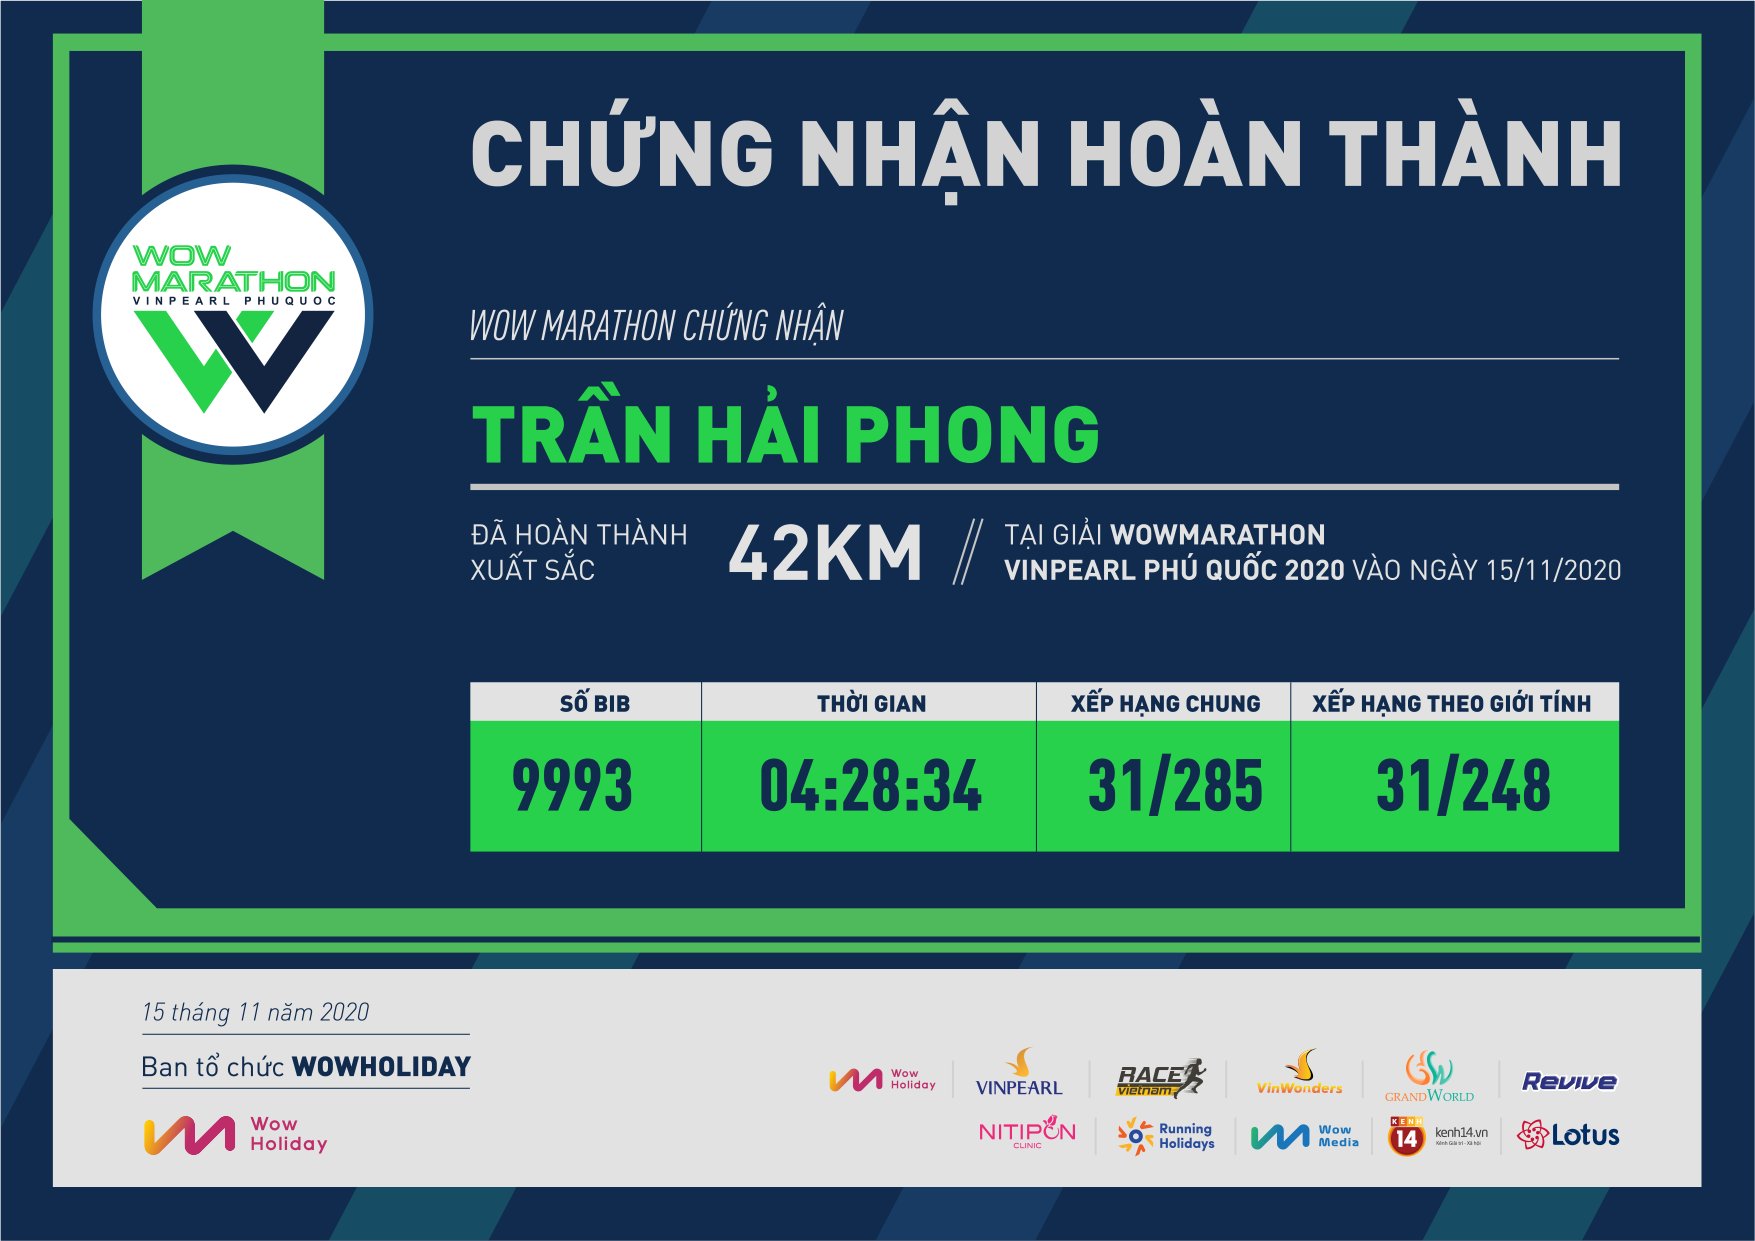 9993 - Trần Hải Phong